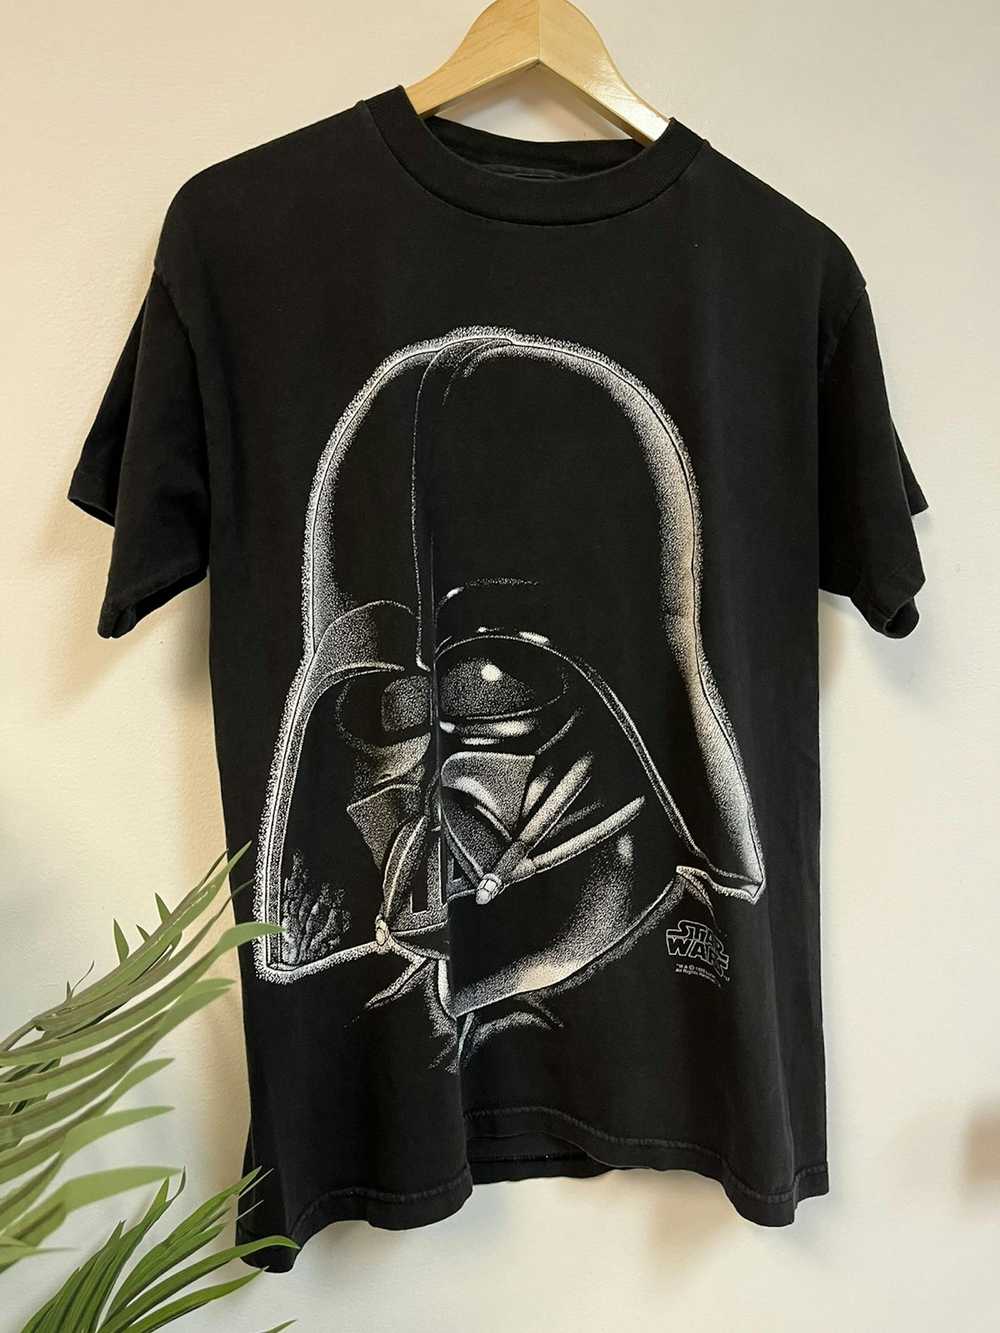 Vintage 1995 Star Wars Darth Vader - image 2